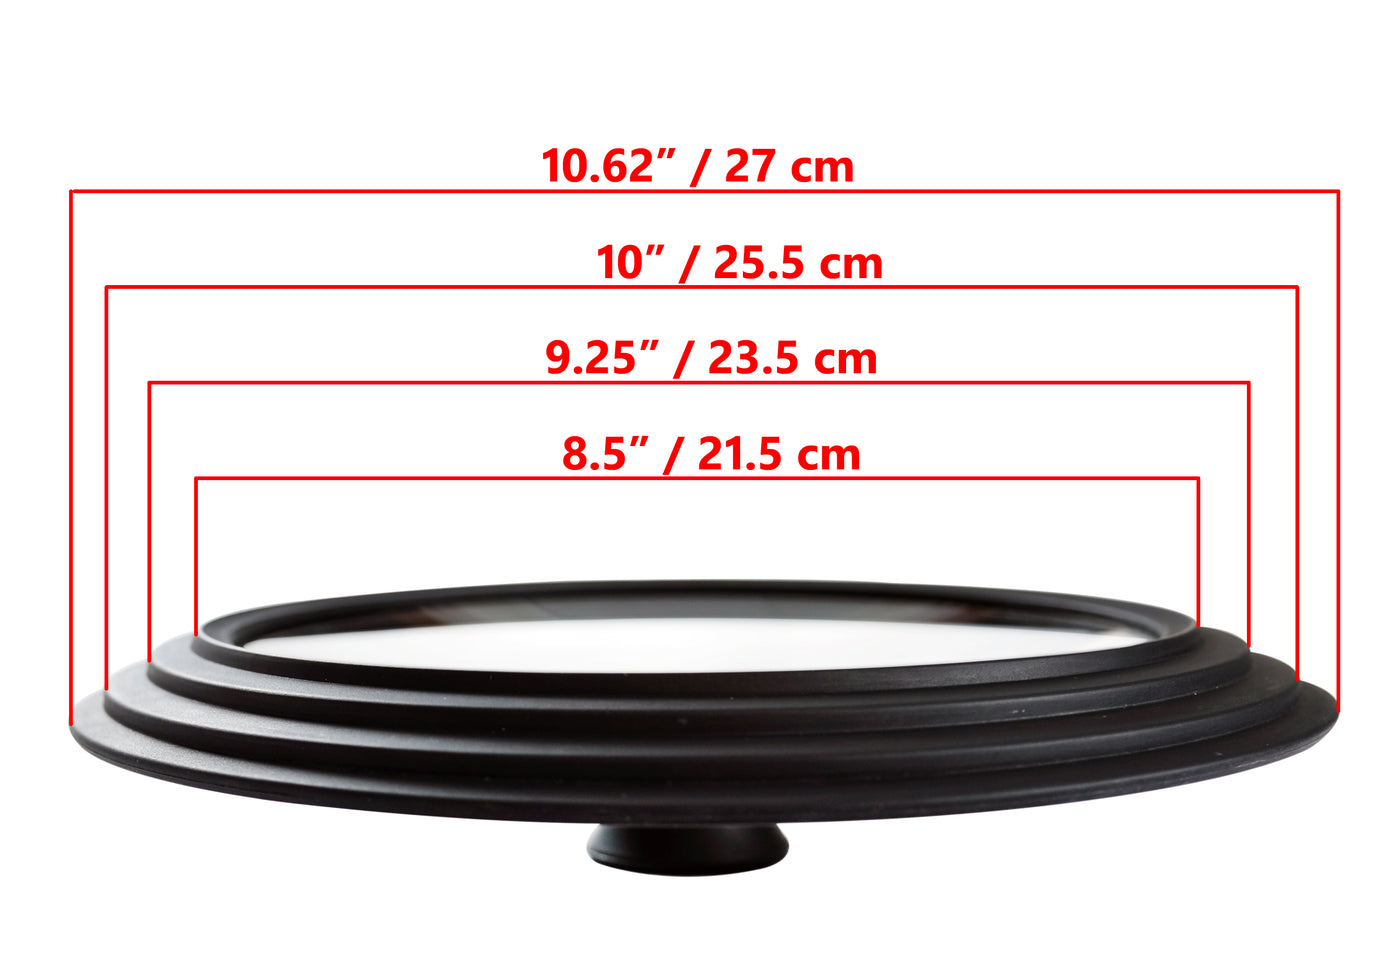 Glasslokk Universal - Multistørrelse, ytre kanter 10,6" / 27 cm diameter, for gryter og panner, svart